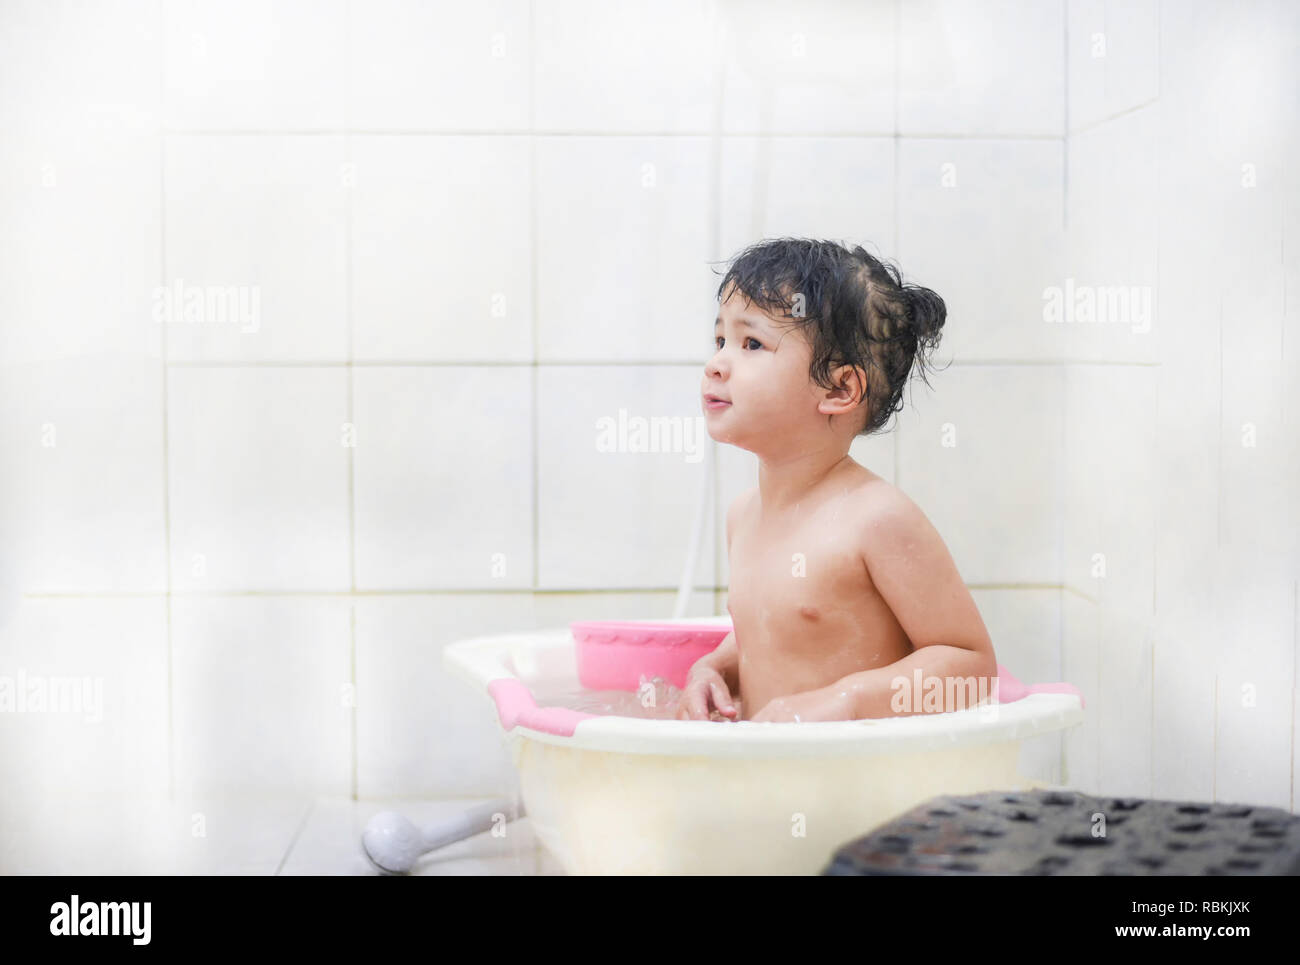 Los niños baño de ducha / Asia chico chica tomando un baño jugando - niña  2-3 años se baña en la ducha Fotografía de stock - Alamy